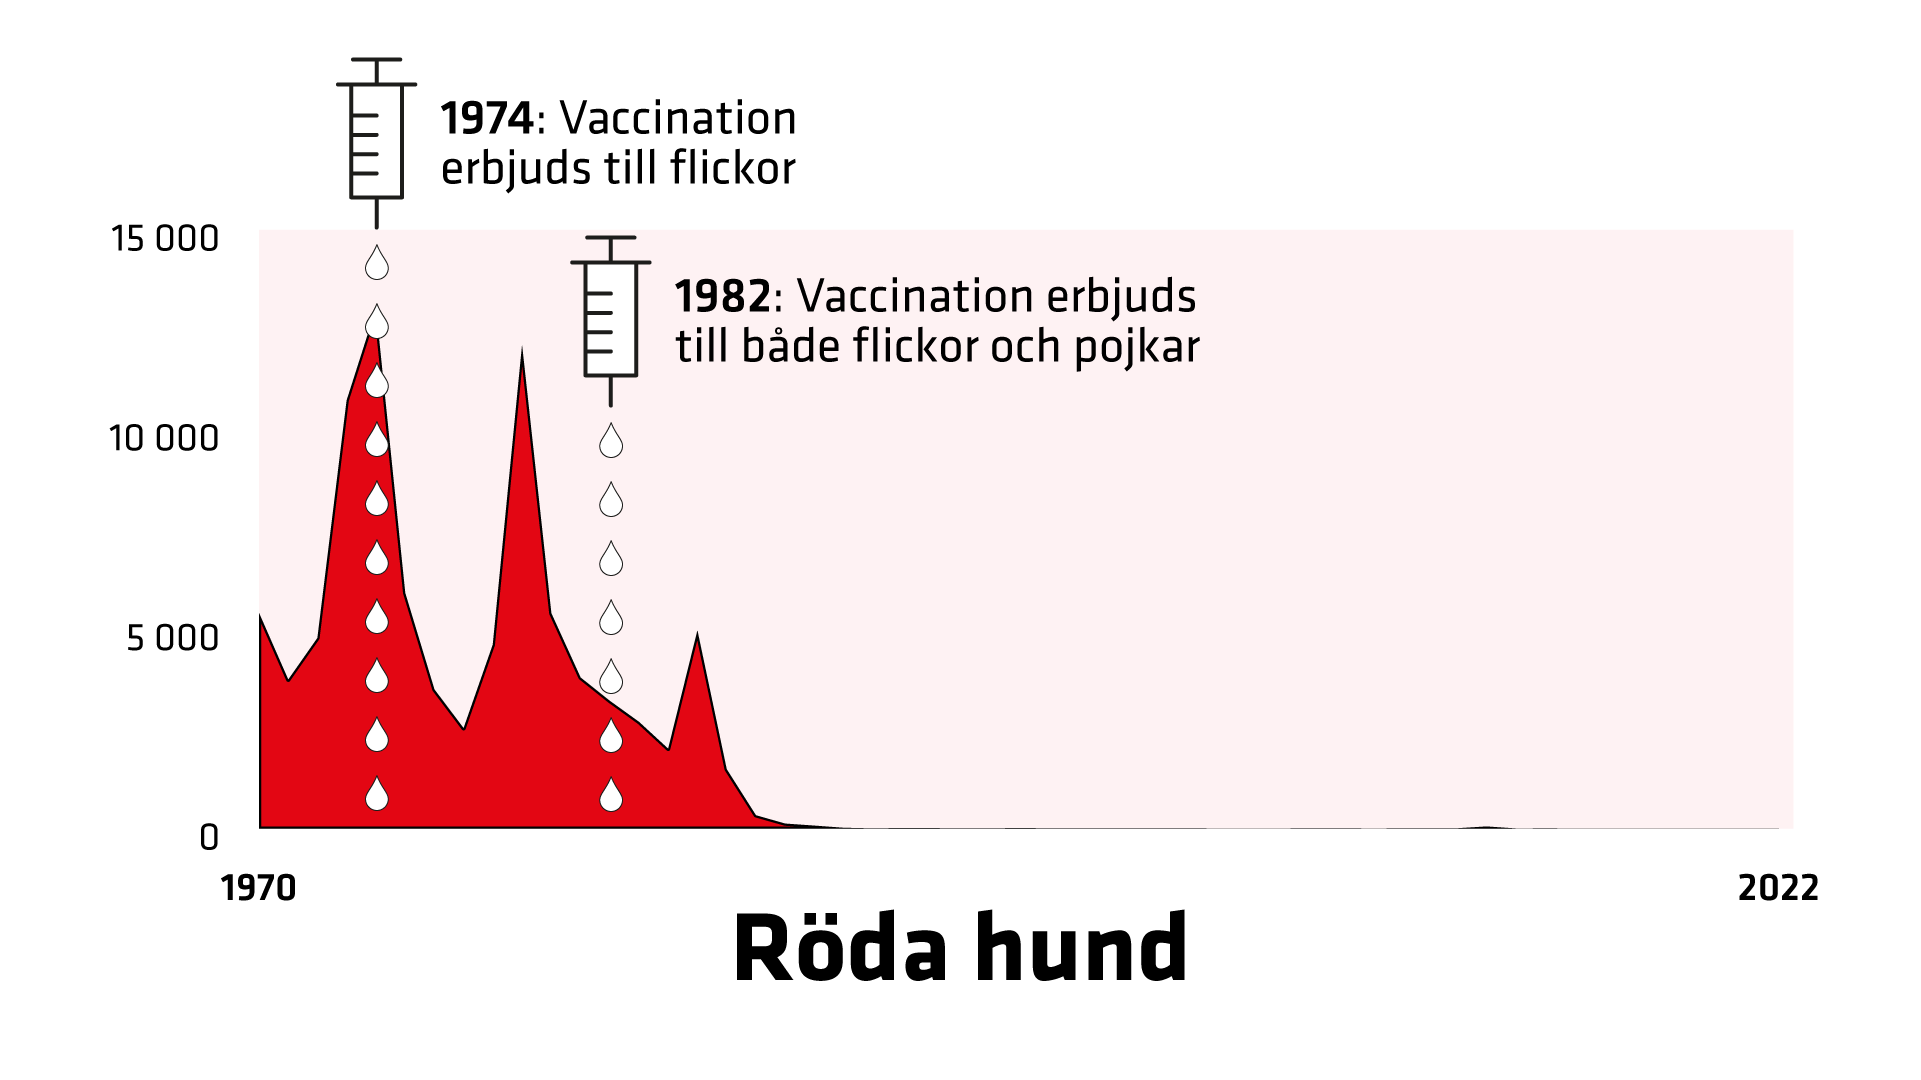 1970 rapporterades 5 394 fall. 1974 erbjuds flickor vaccination. 1982 erbjuds alla barn vaccination.  Fallen sjunker snabbt till 2022.